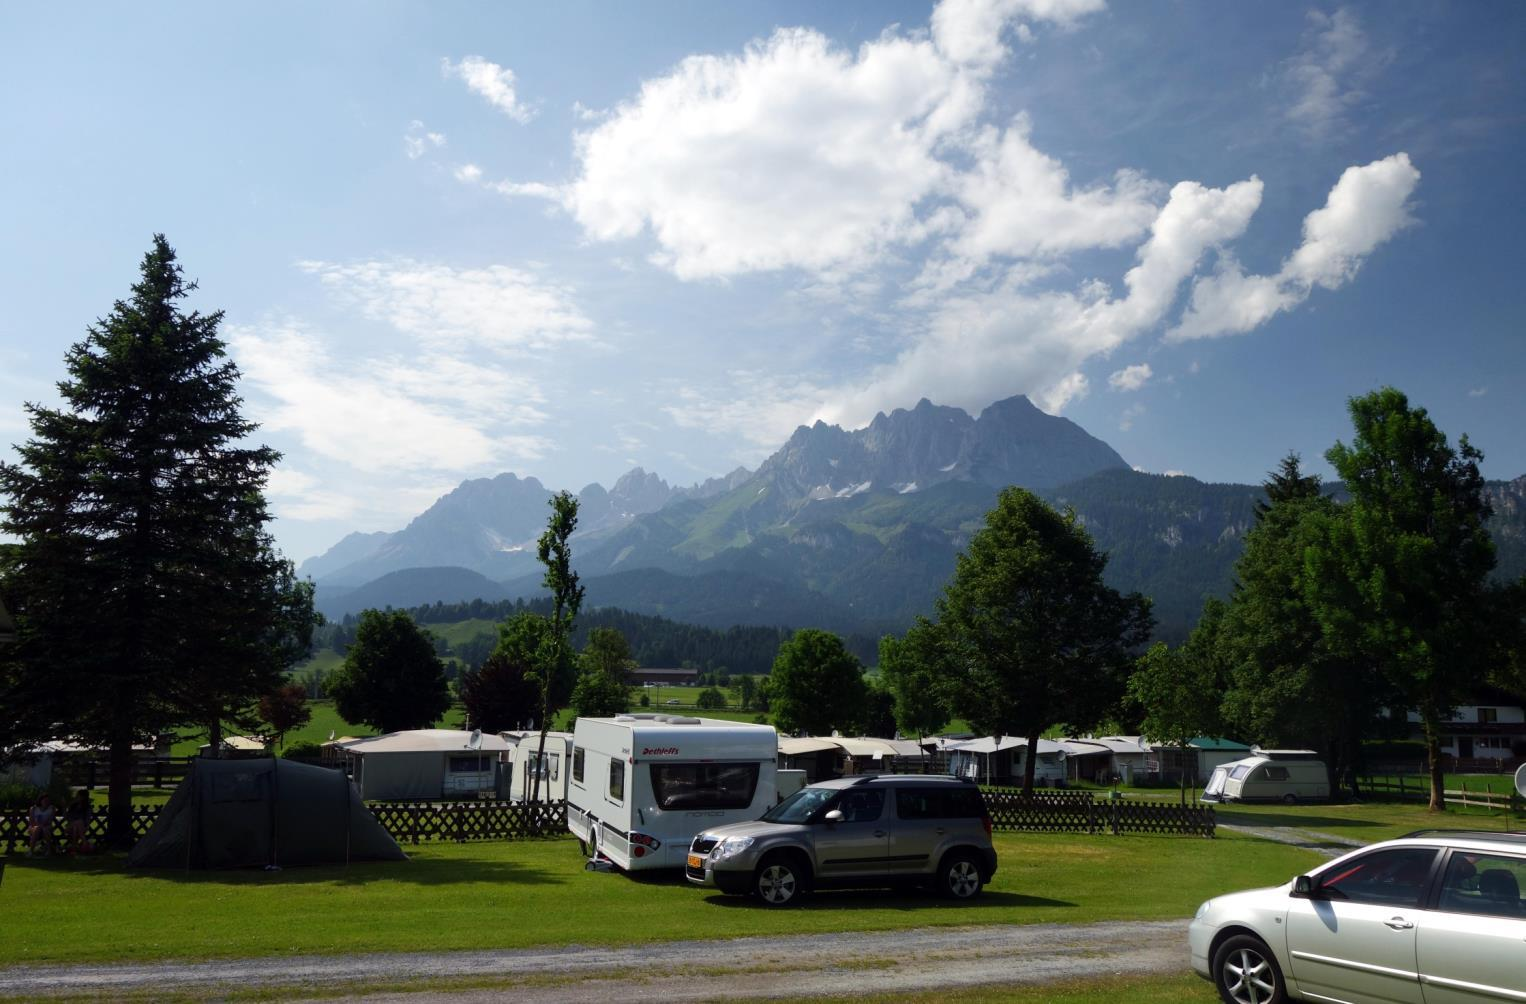 Zaterdag 13 juni Laudenbach - Weiberndorf bij Sankt Johann in Tirol 400 km We hebben prachtige dagen gehad in Laudenbach (zie deel 1), maar het is tijd om te vertrekken.